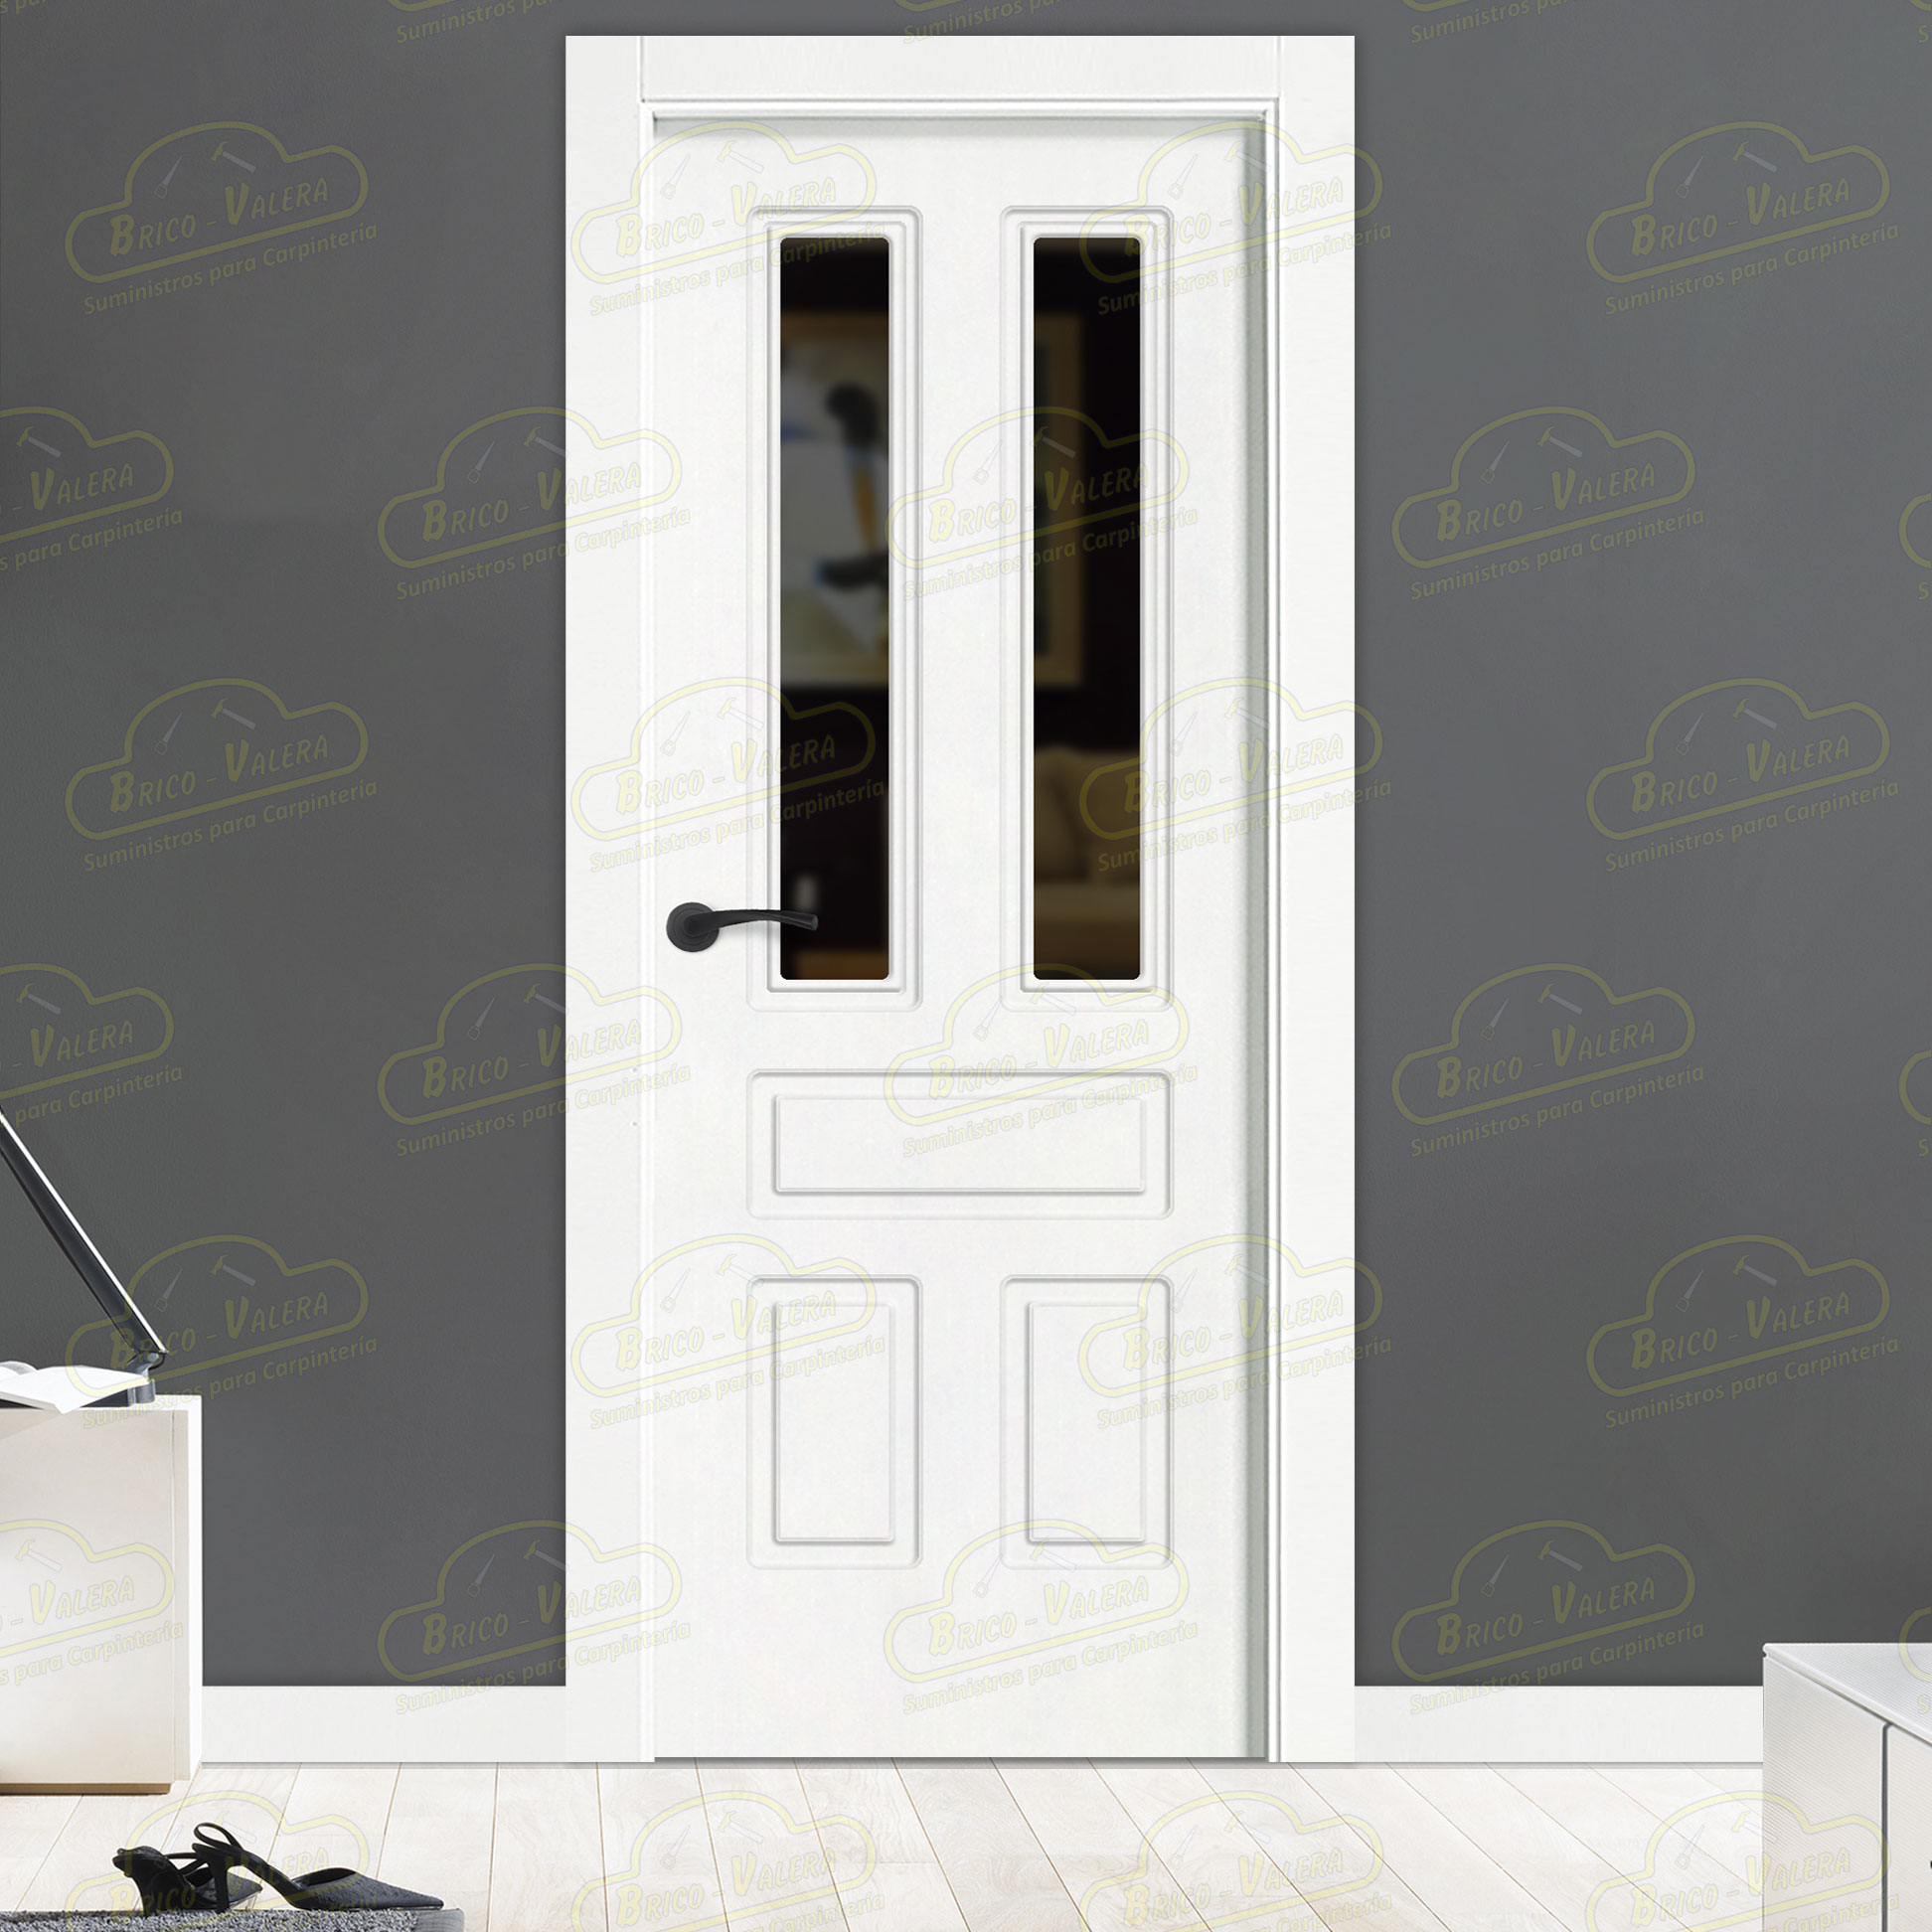 Puerta Premium Aranjuez-V2 Lacada Blanca con Manillas Negras de Interior en Block (Maciza)